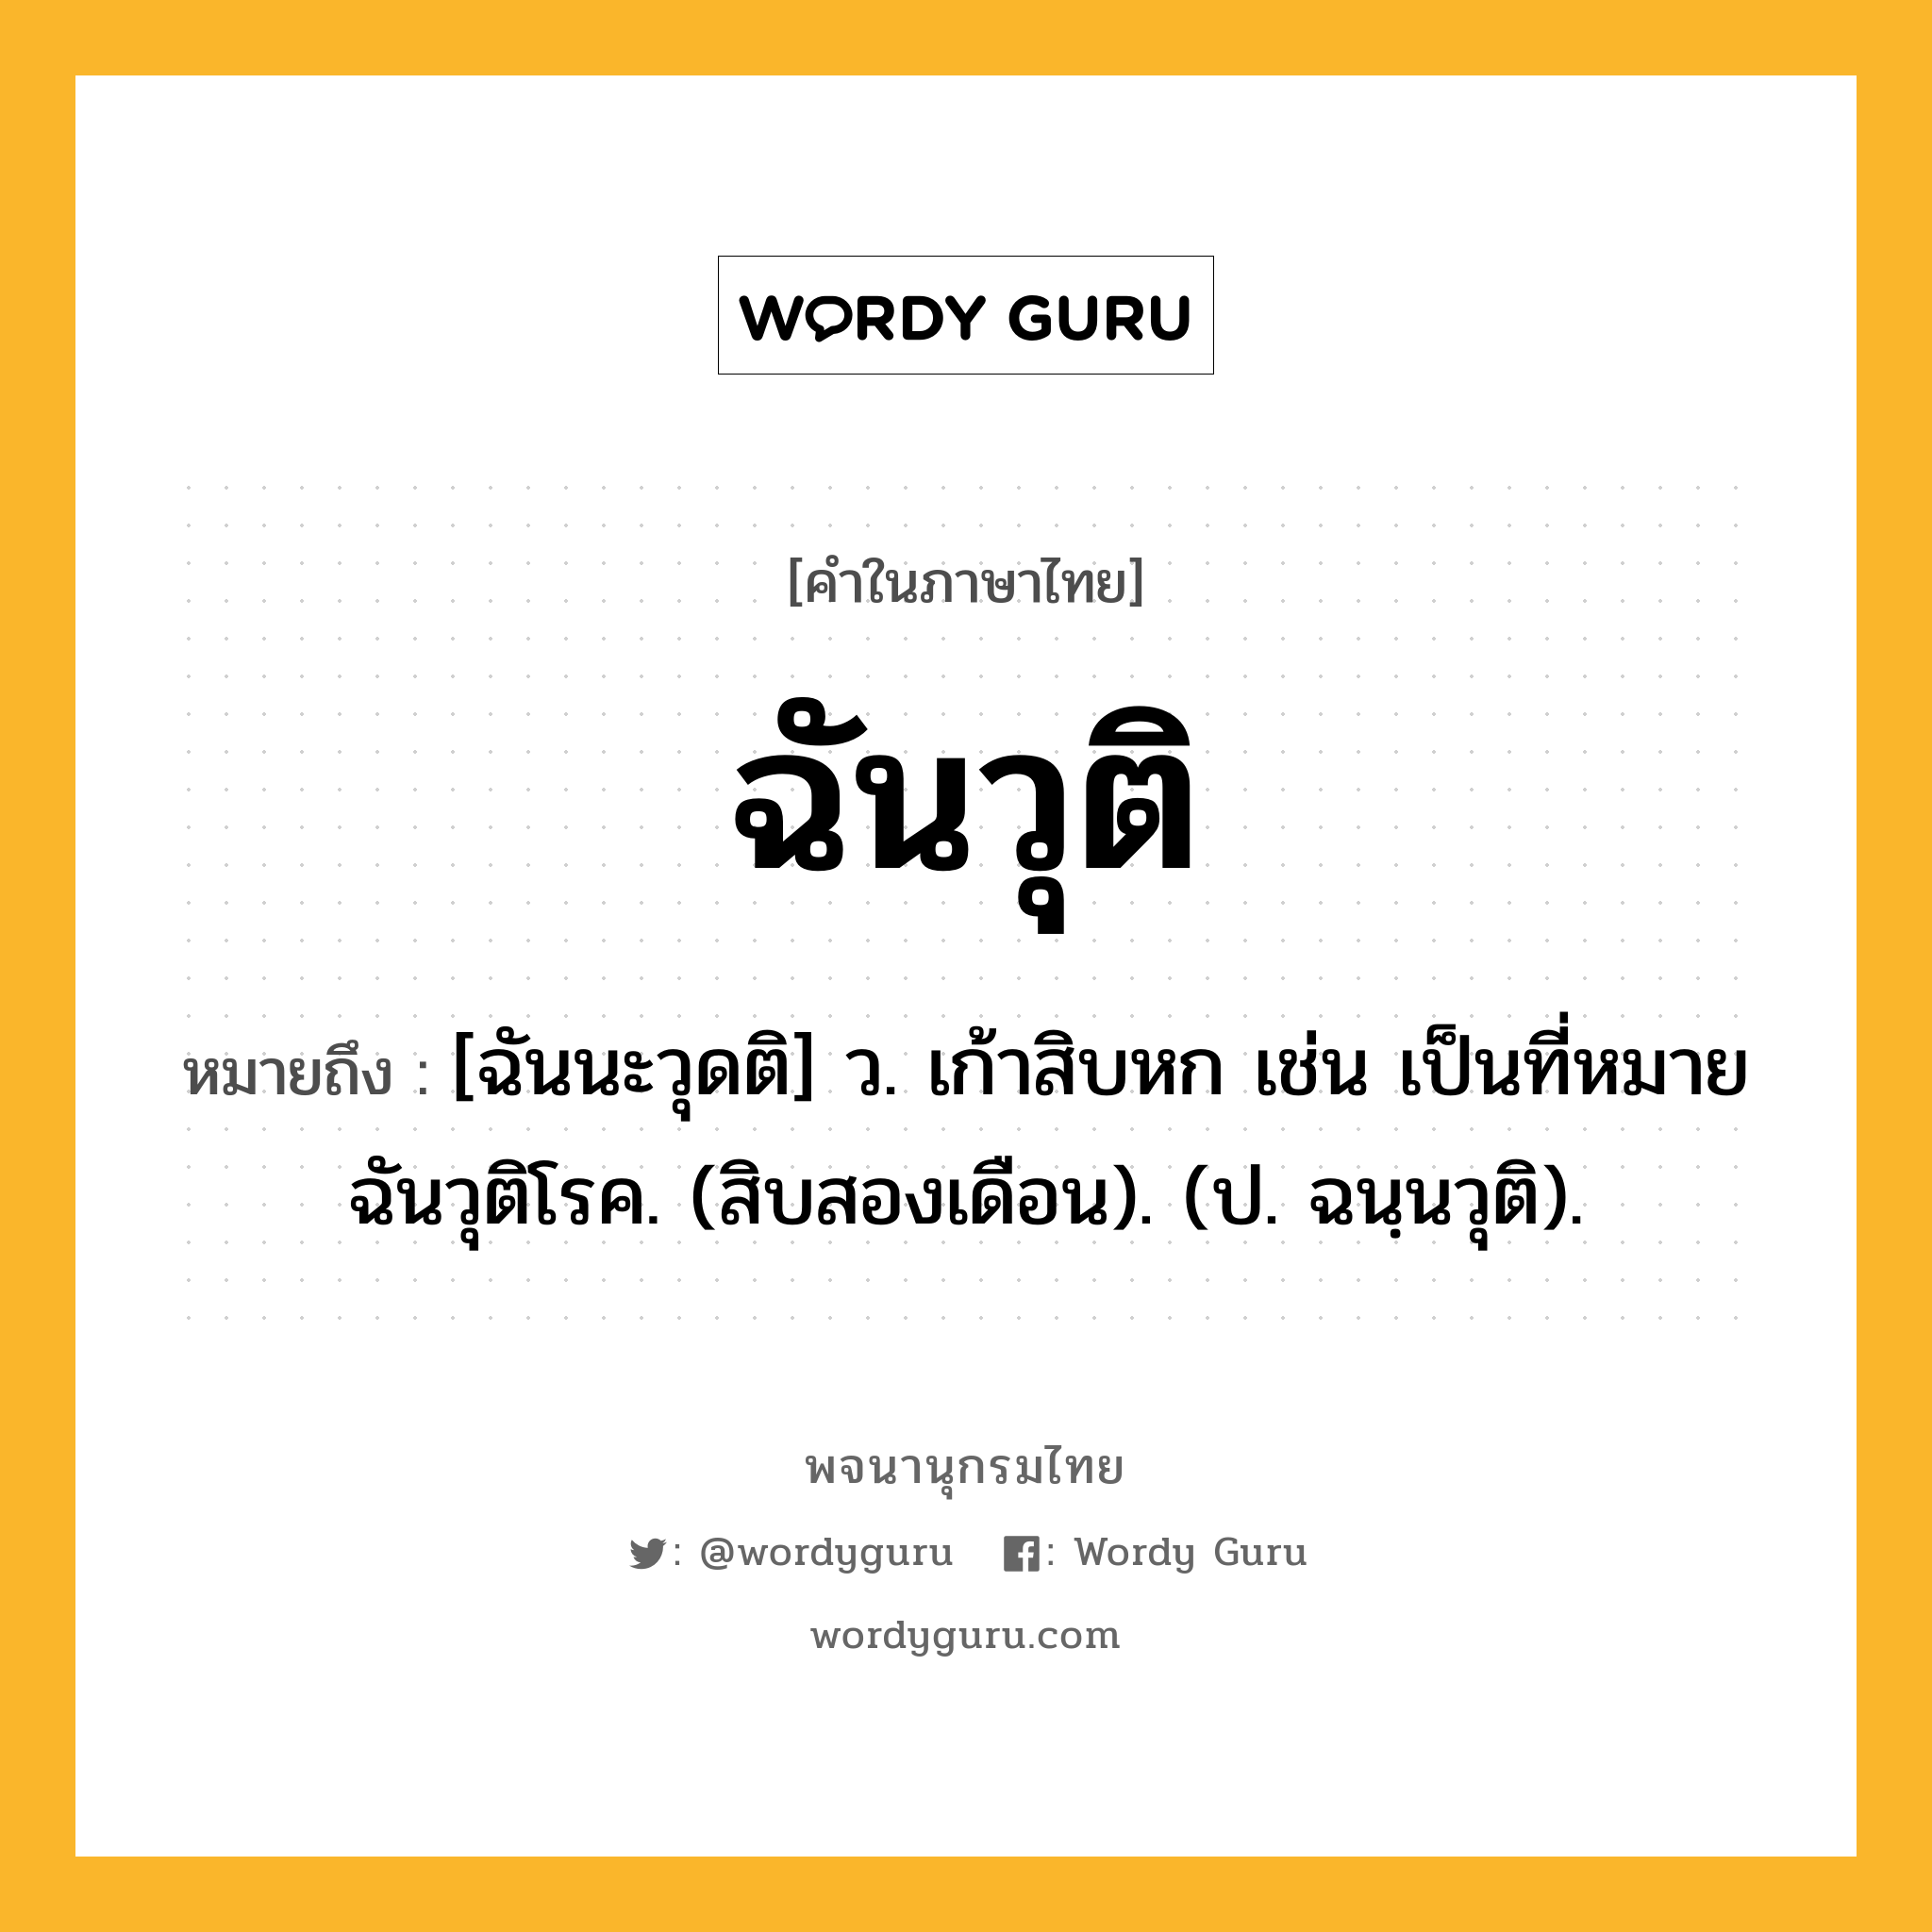 ฉันวุติ ความหมาย หมายถึงอะไร?, คำในภาษาไทย ฉันวุติ หมายถึง [ฉันนะวุดติ] ว. เก้าสิบหก เช่น เป็นที่หมายฉันวุติโรค. (สิบสองเดือน). (ป. ฉนฺนวุติ).